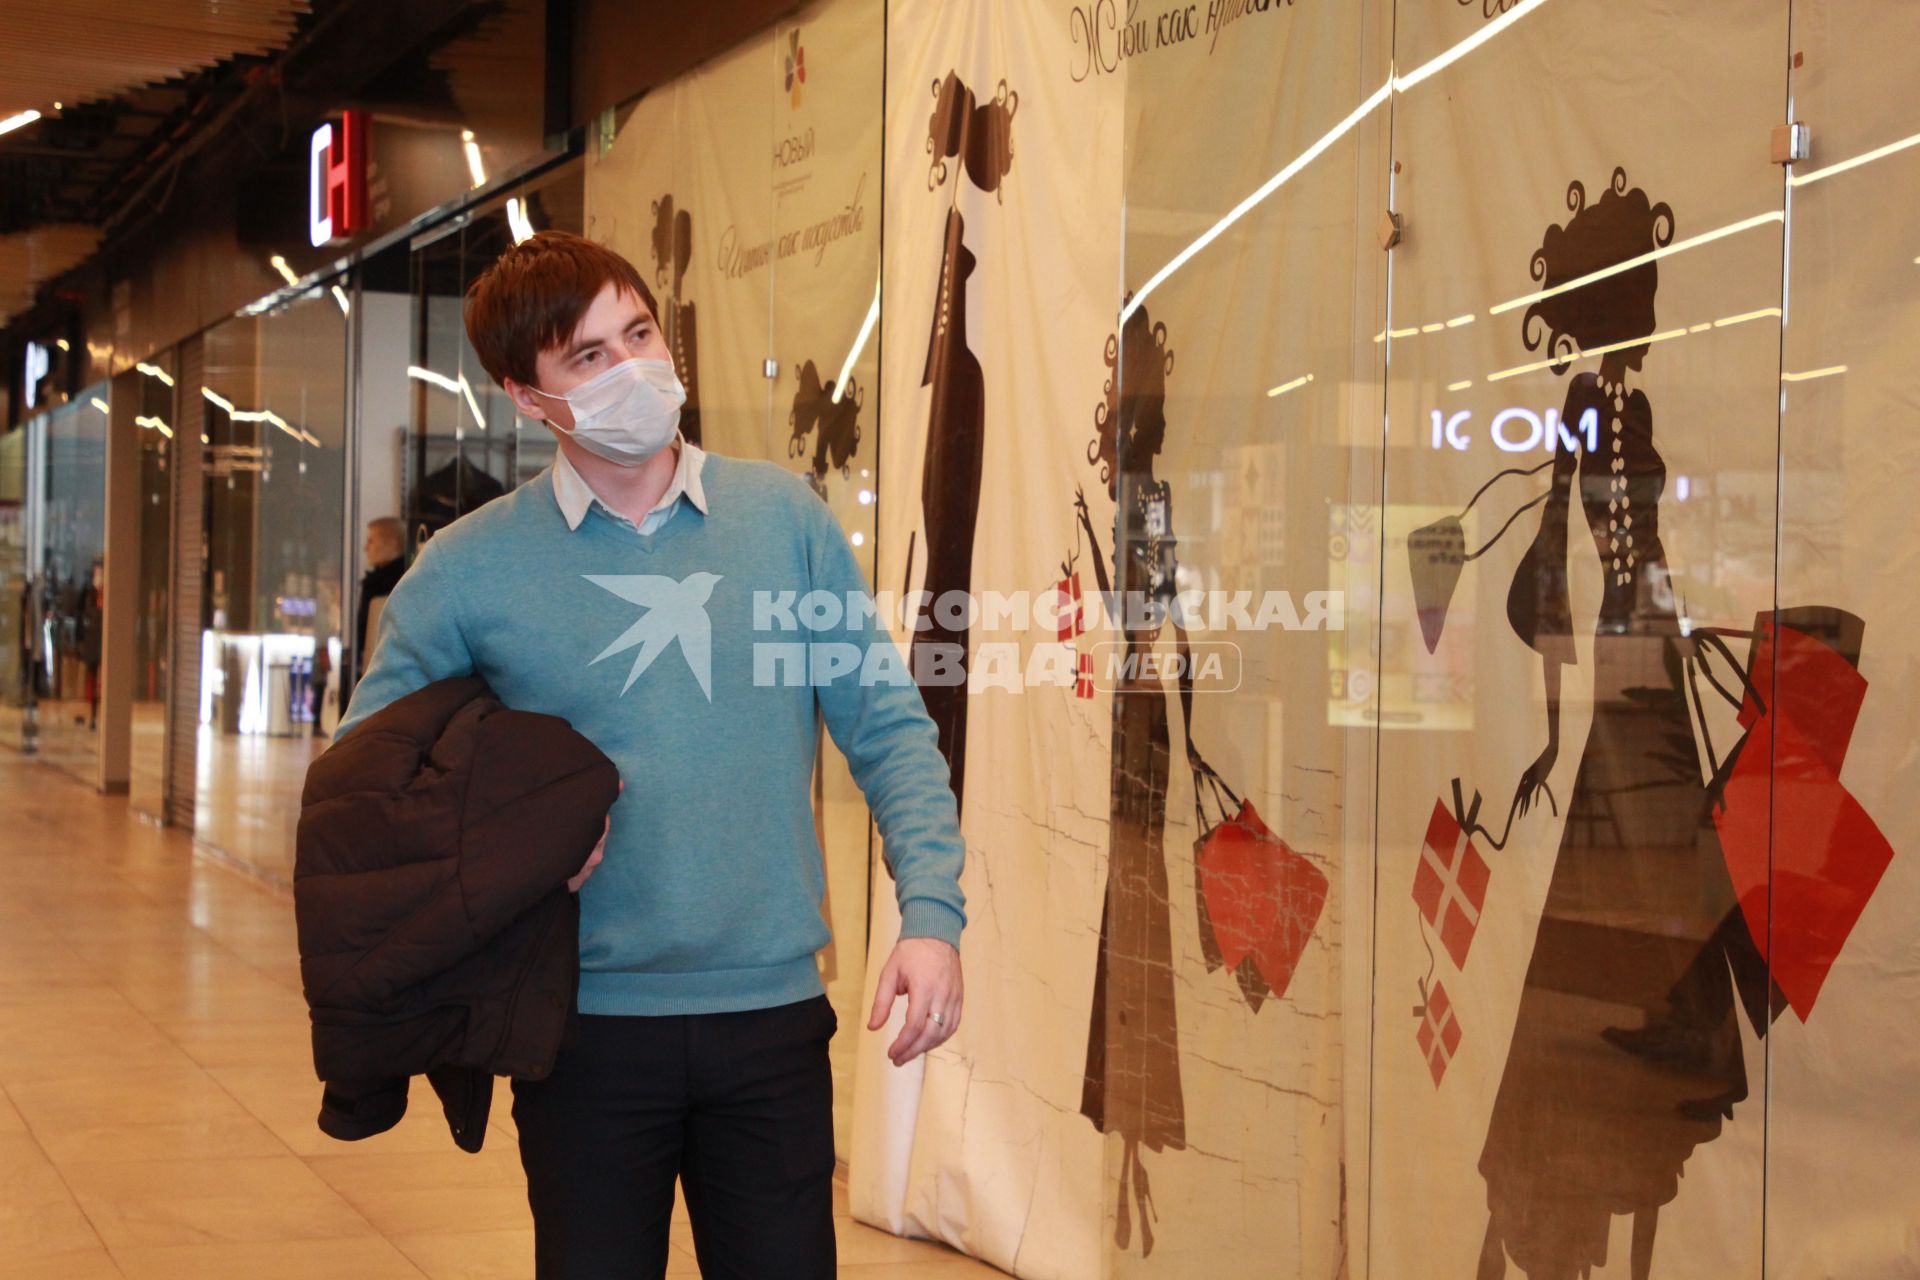 Иркутск. Мужчина в медицинской маске  в торговом центре.